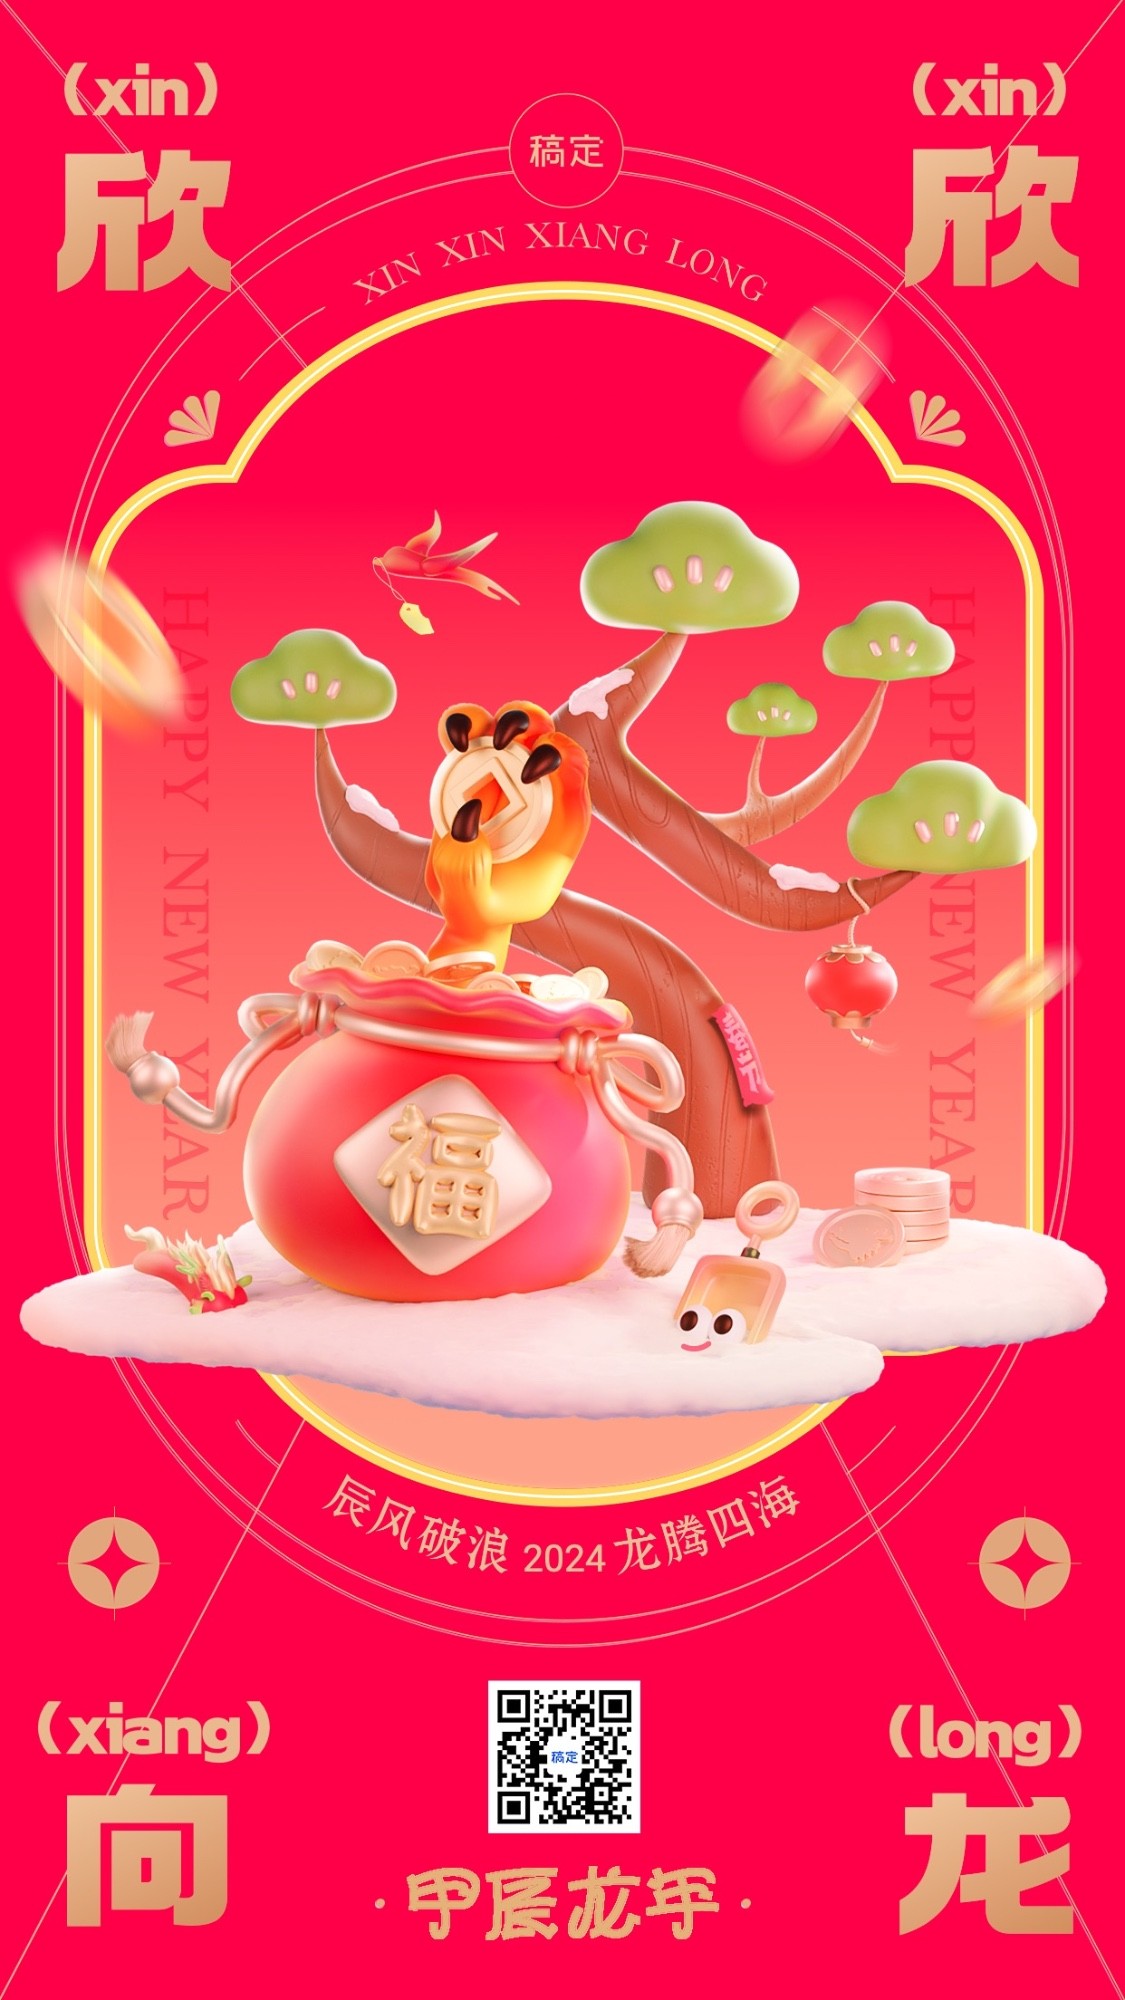 春节成语谐音梗节日祝福套系手机海报